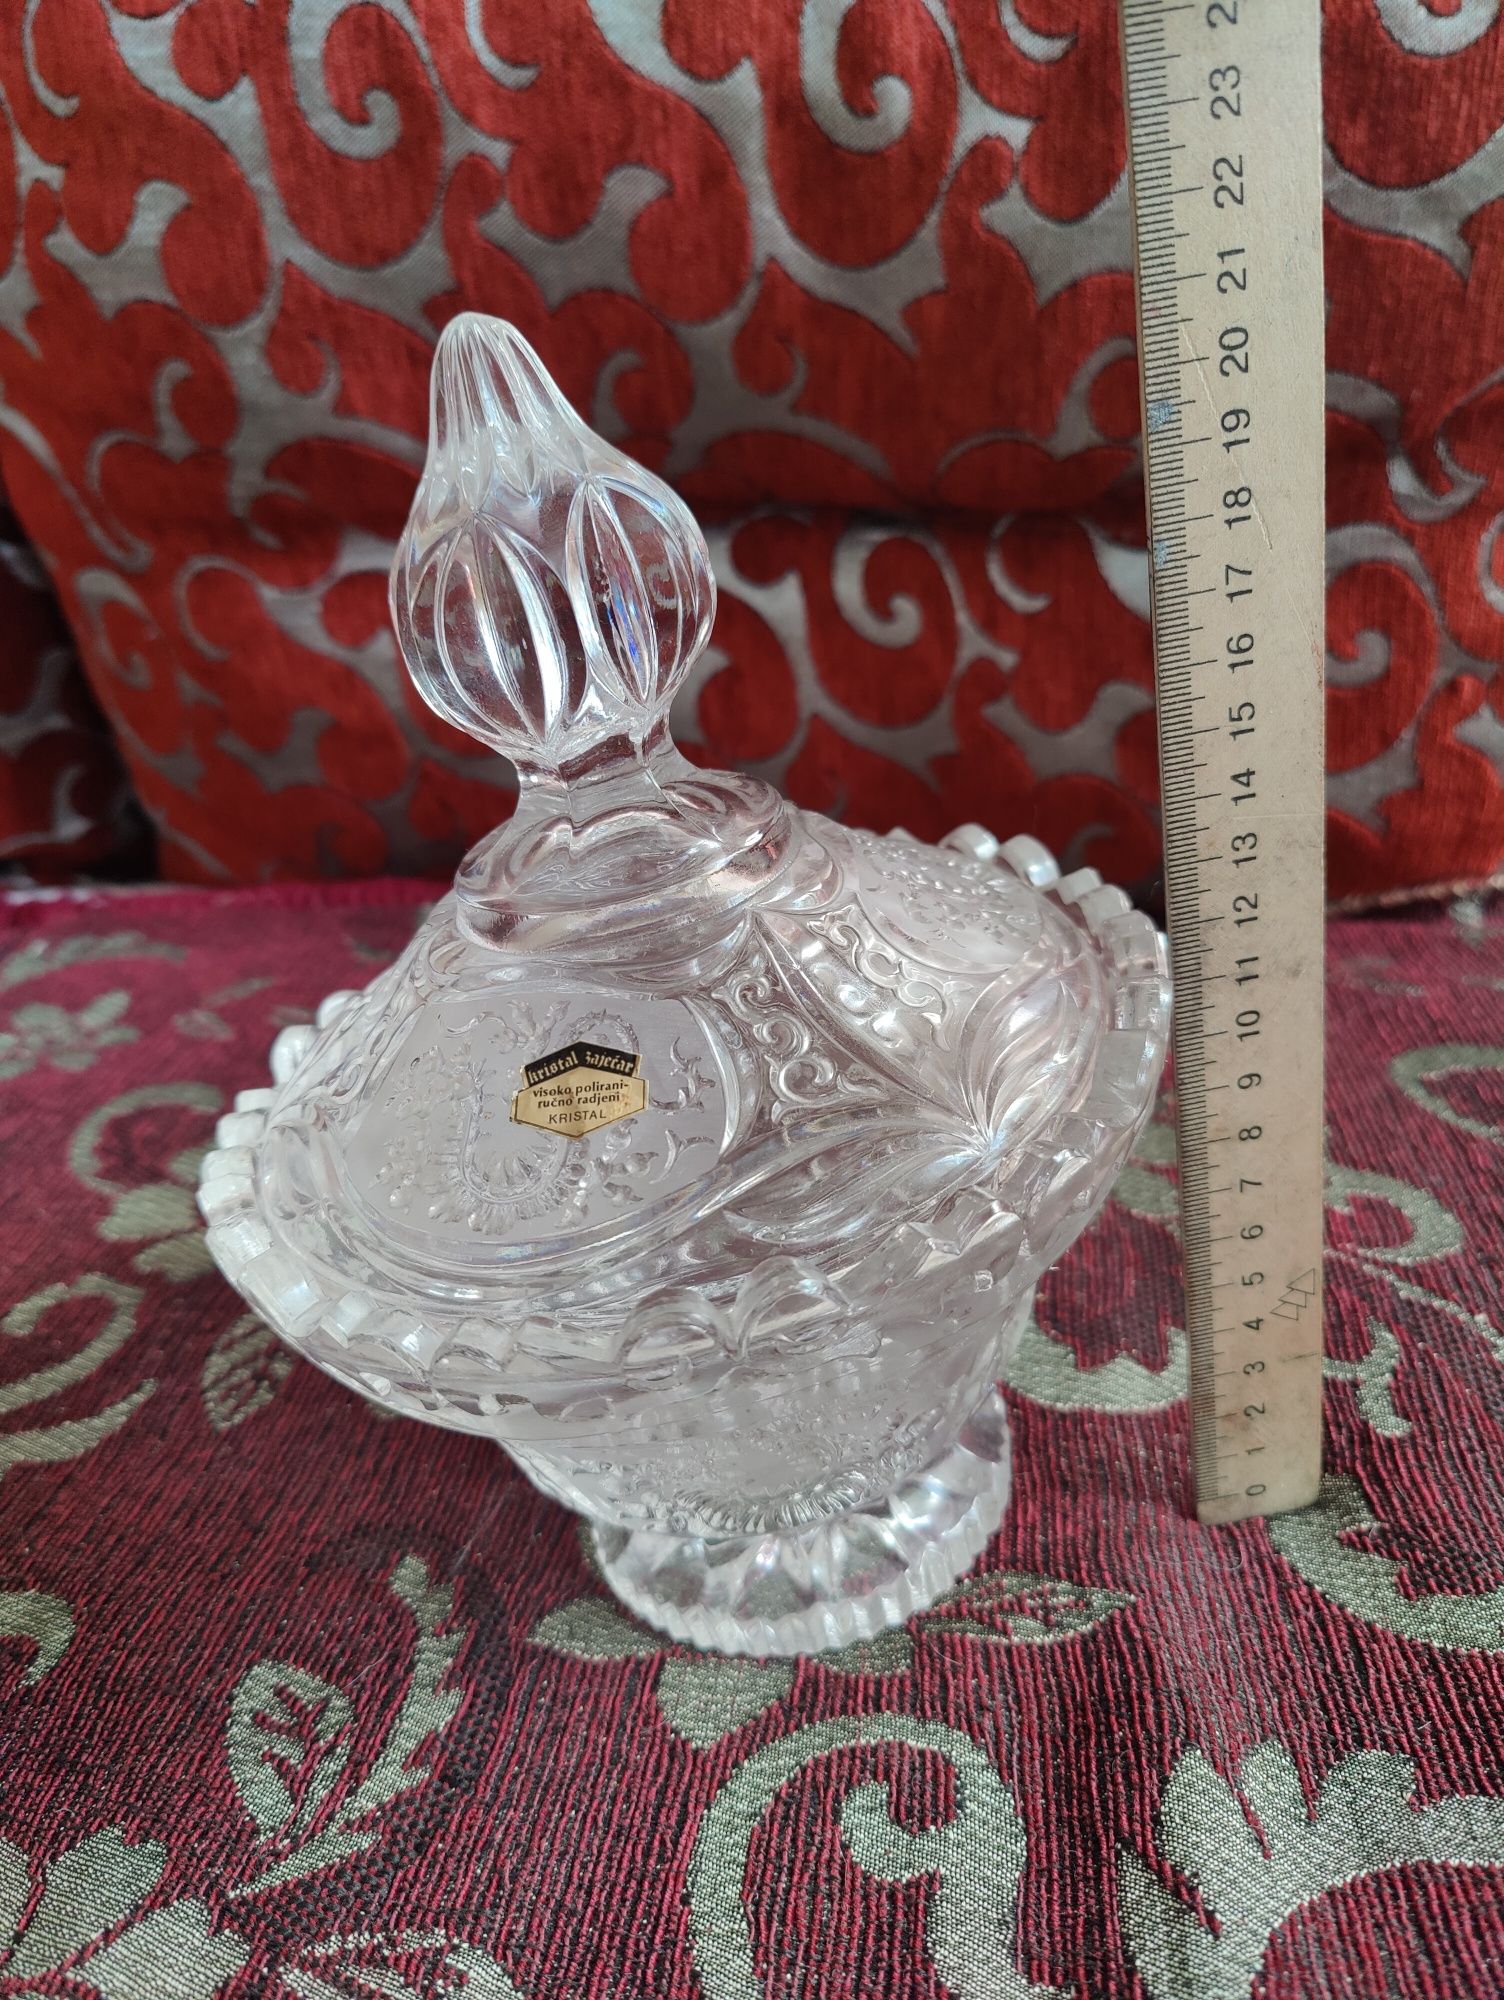 Цукерниця ваза для цукерок конфетница кришталь хрусталь